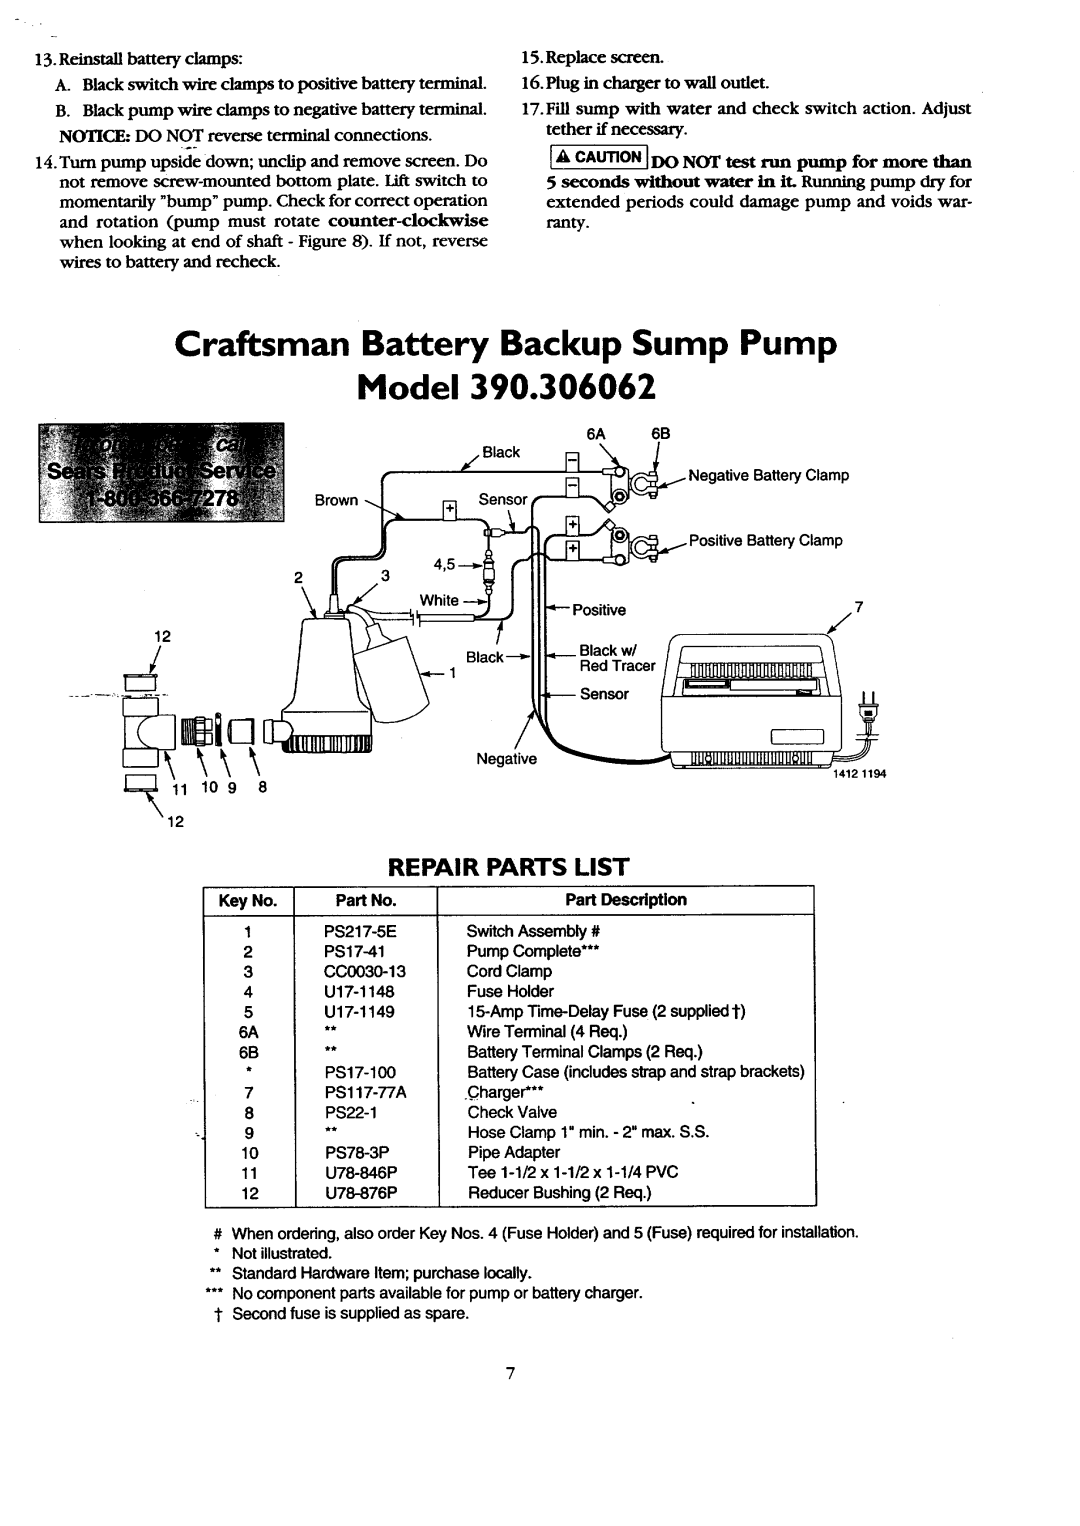 Sears 390.306062 owner manual Craftsman Battery Backup Sump Pump Model, Repair Parts List 